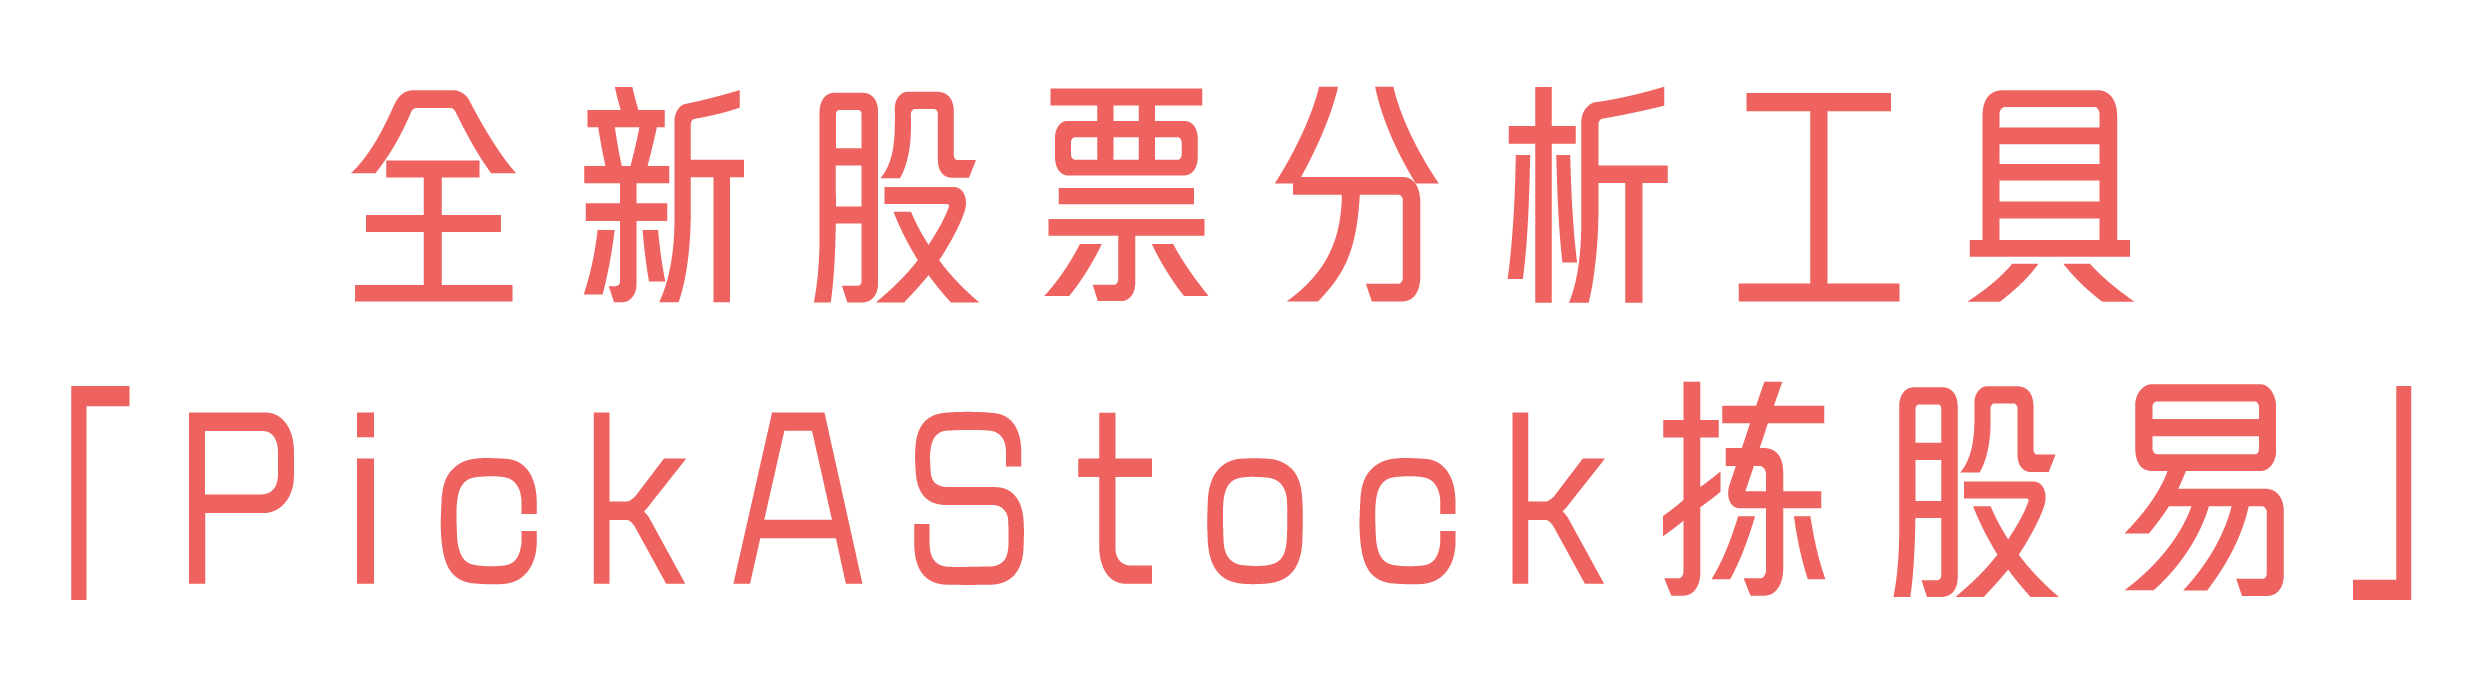 全新股票分析工具「PickAStock拣股易」